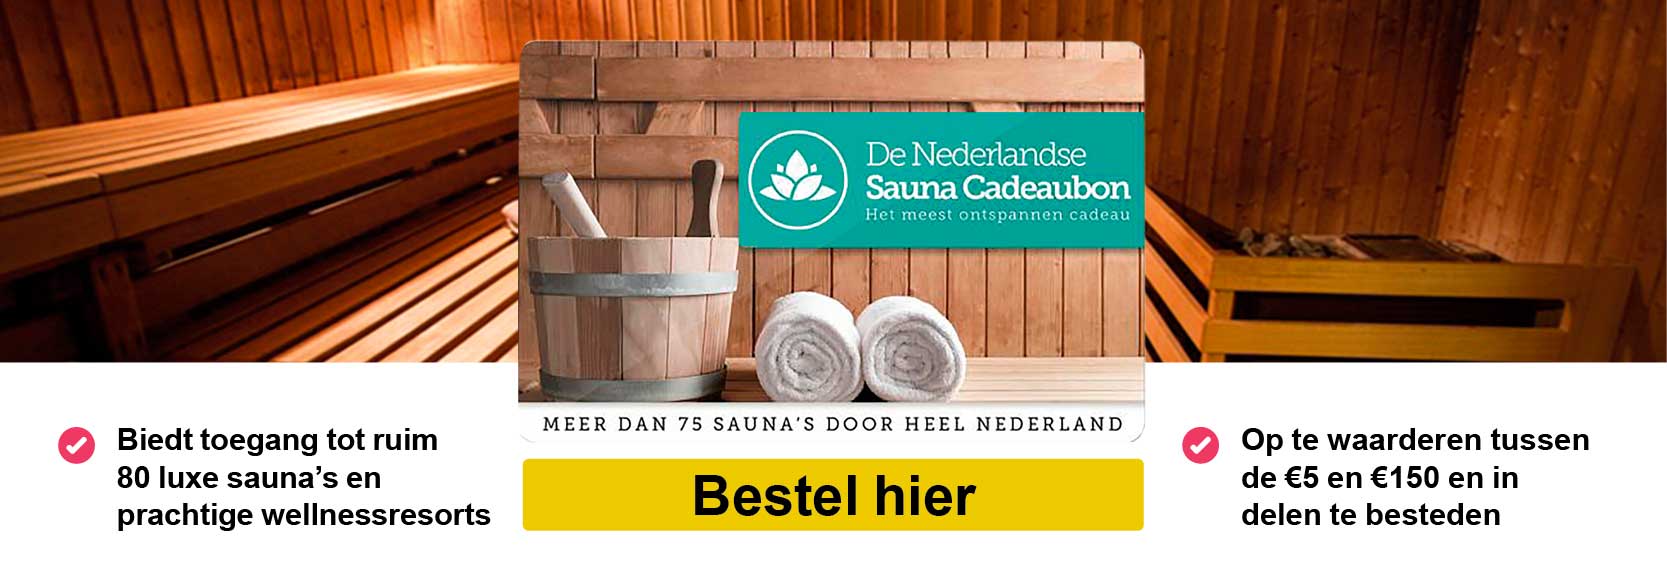 jas Bestuiver zin De Nederlandse Sauna Cadeaubon|Sauna Cadeaukaarten | Alle Giftcards